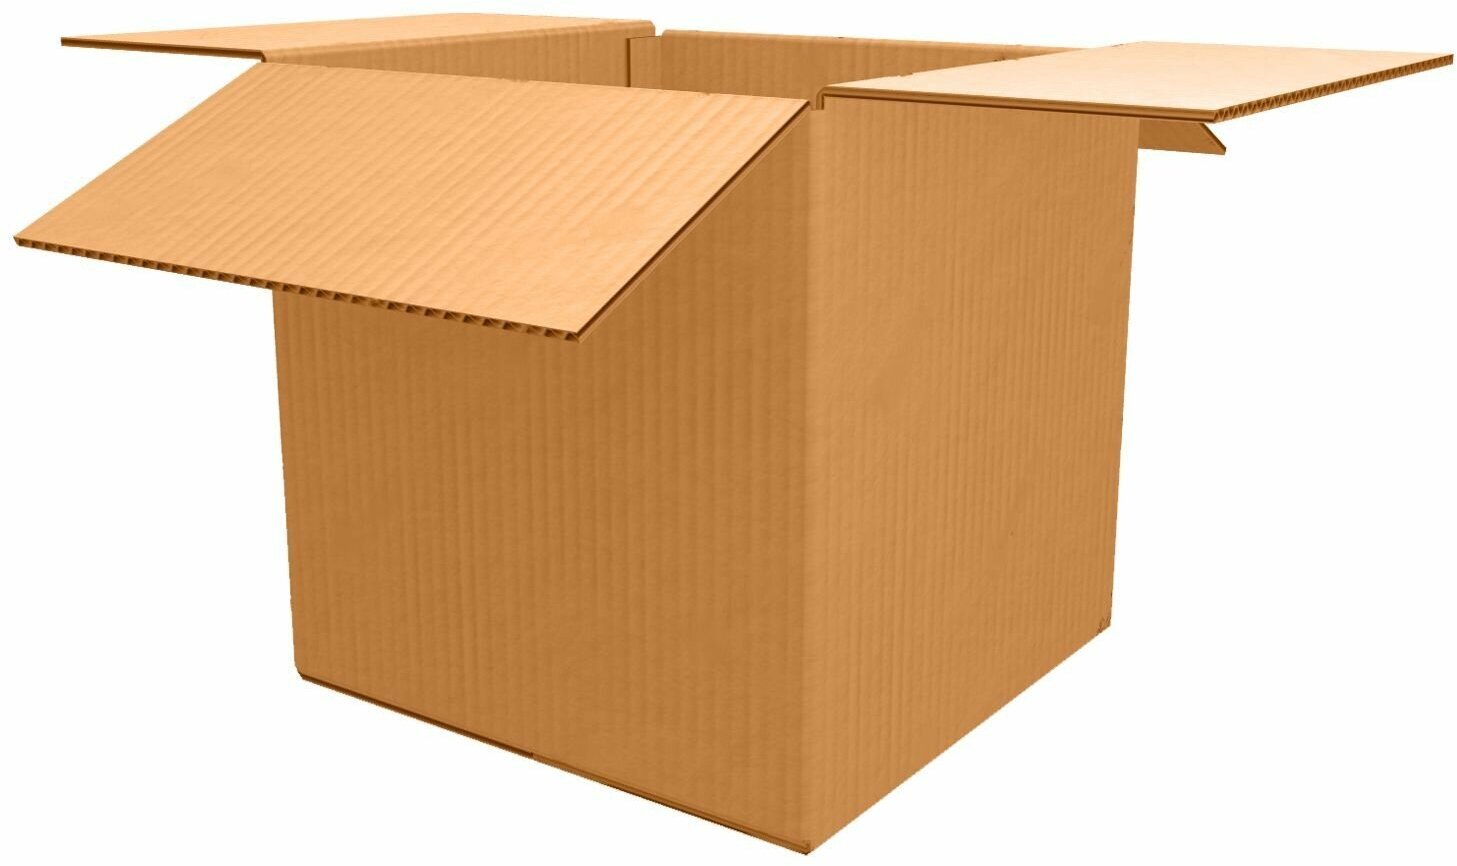 Картонная коробка для маркетплейсов 20x20x20 см Т24 профиль С 10 шт, для хранения вещей, упаковки, маркетплейс, коробки картонные